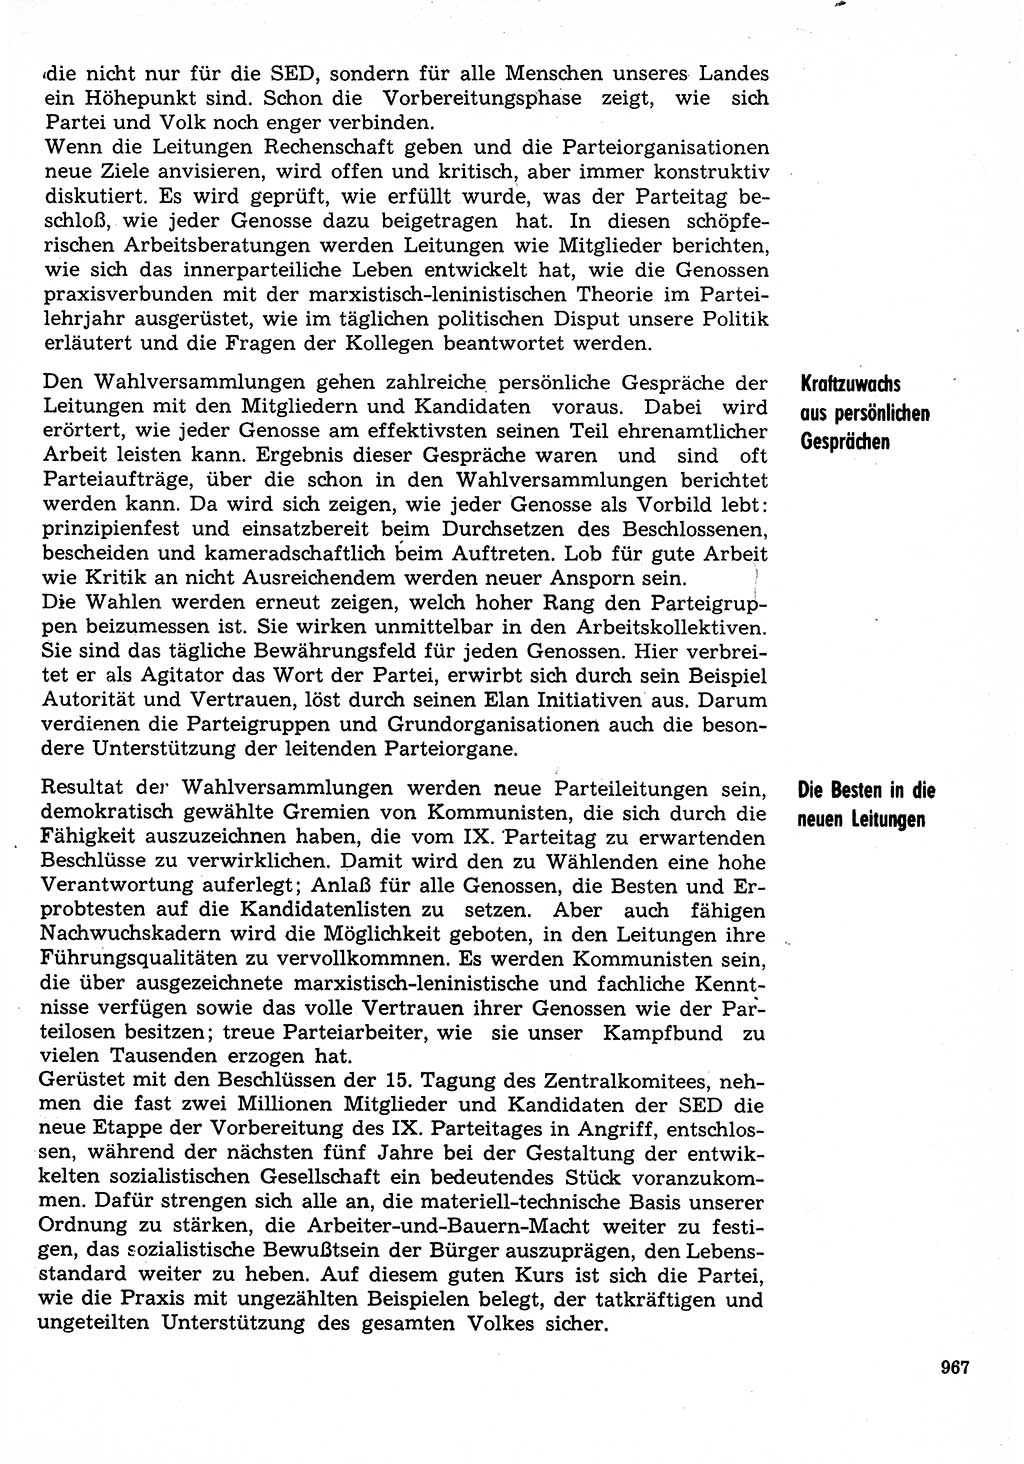 Neuer Weg (NW), Organ des Zentralkomitees (ZK) der SED (Sozialistische Einheitspartei Deutschlands) für Fragen des Parteilebens, 30. Jahrgang [Deutsche Demokratische Republik (DDR)] 1975, Seite 967 (NW ZK SED DDR 1975, S. 967)